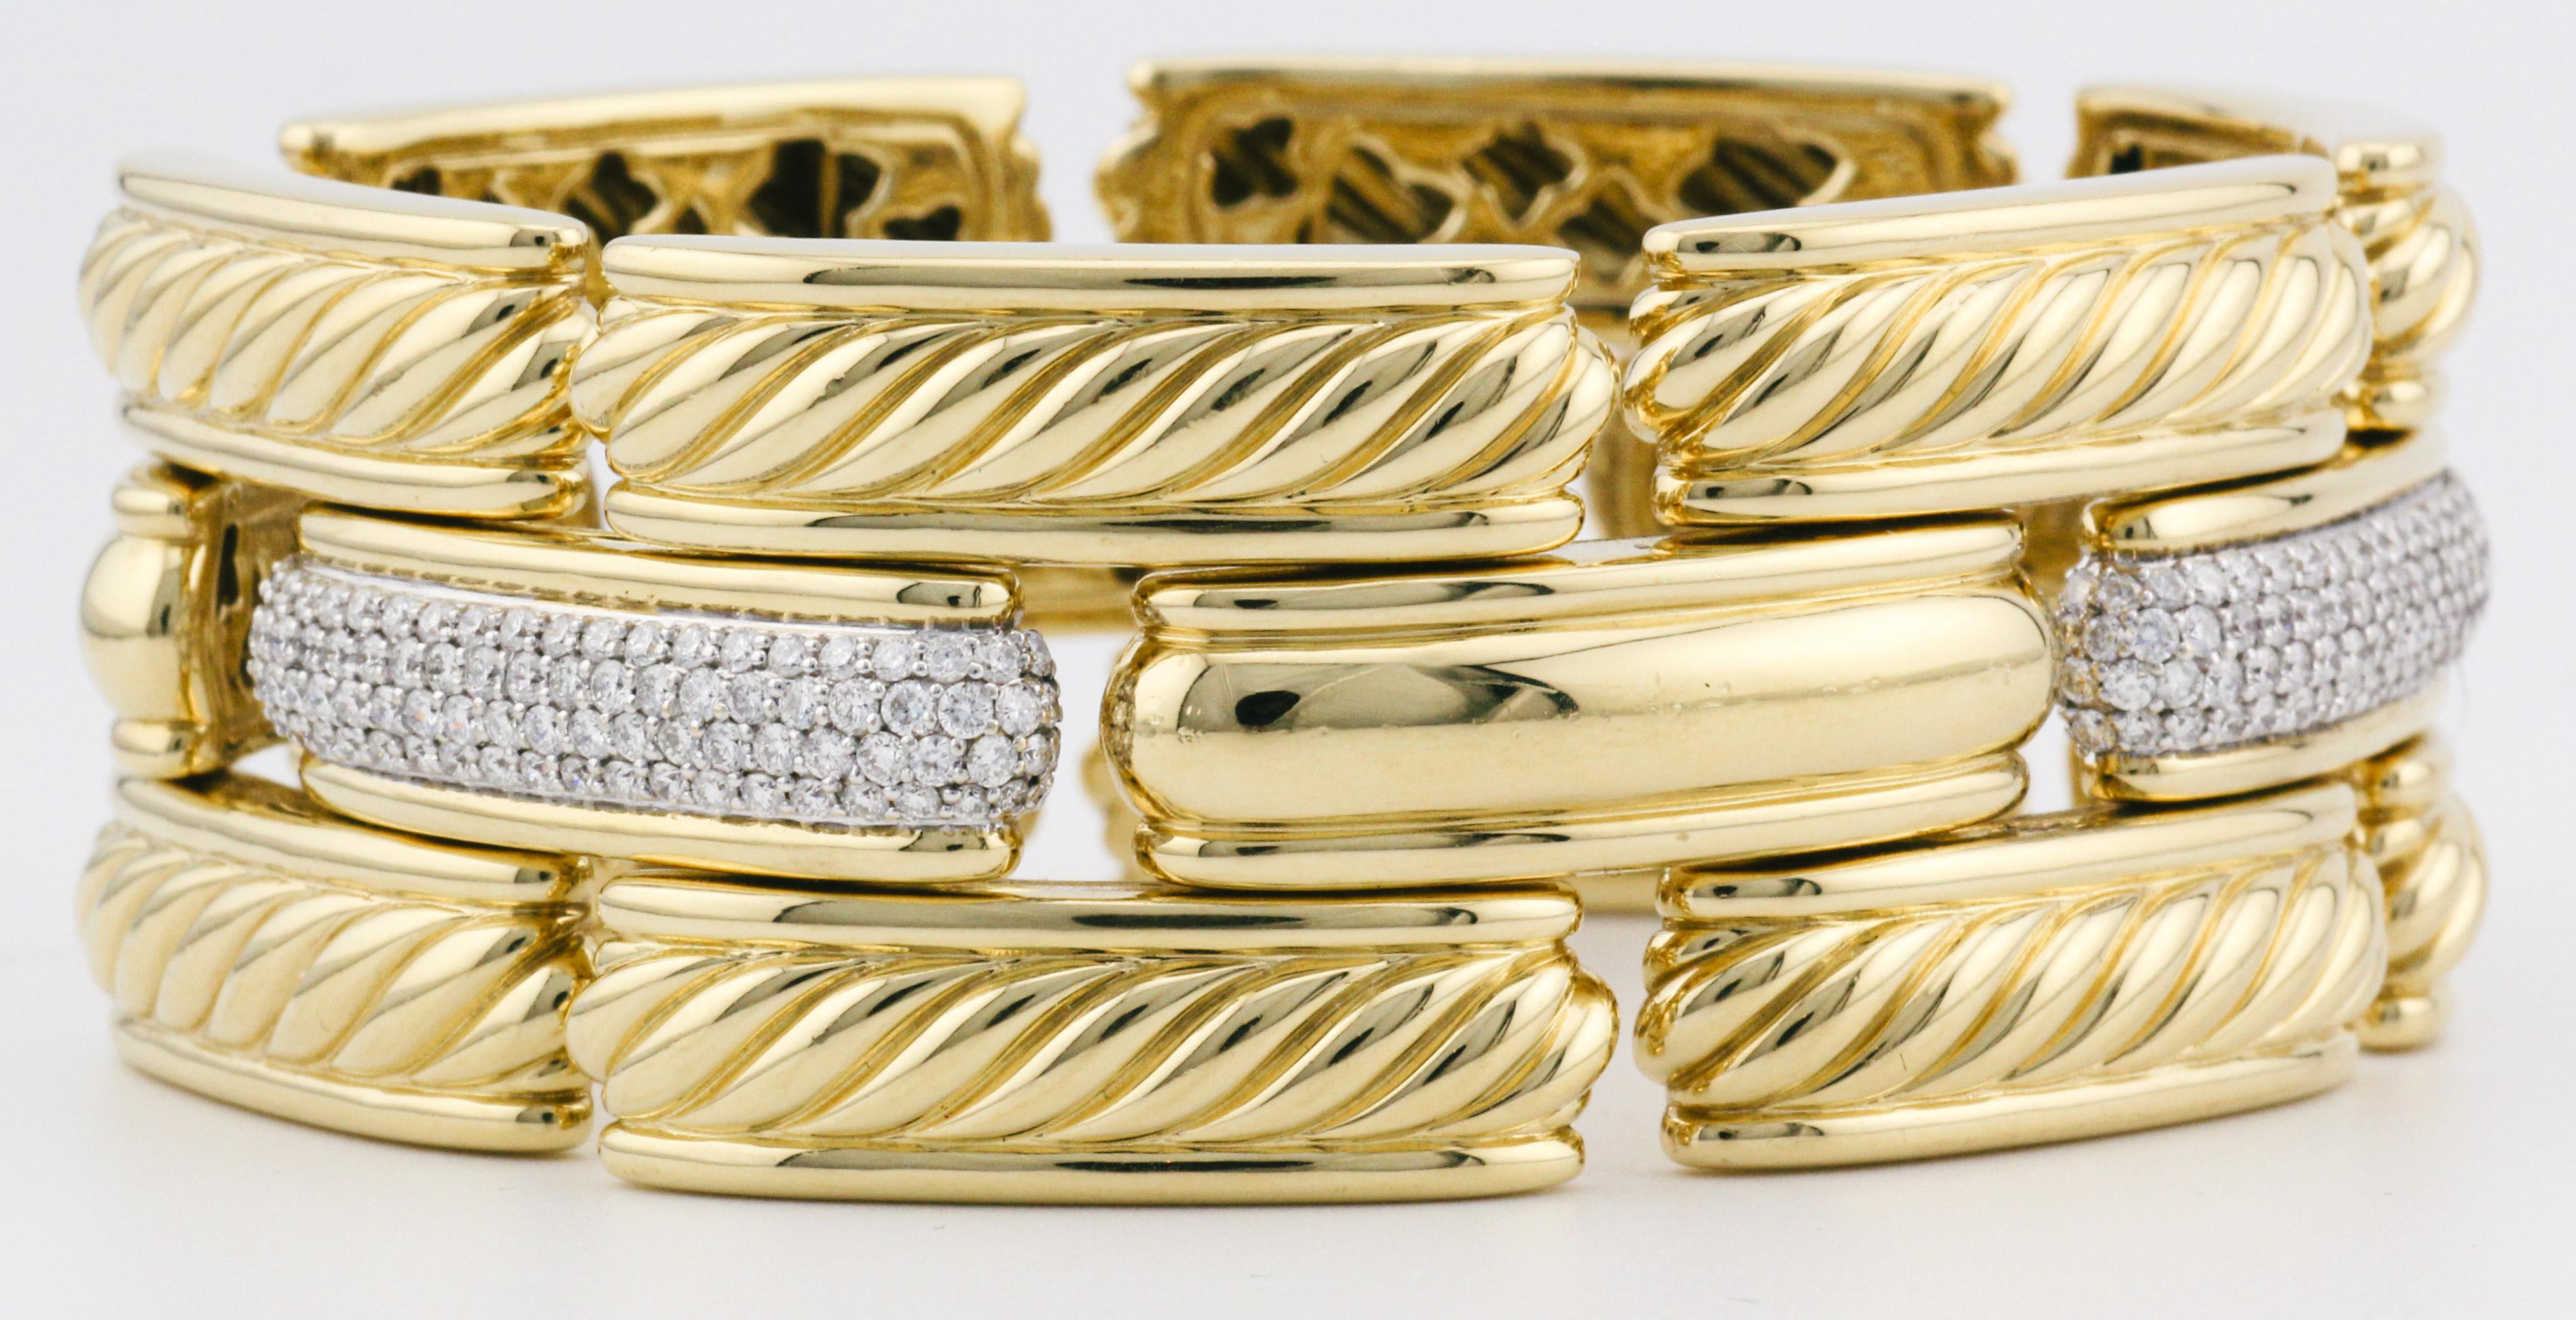 Entrez dans le royaume du luxe avec le bracelet Gatelin Pave Diamond Cable Link en or 18 carats de David Yurman, un chef-d'œuvre de l'artisanat de la haute joaillerie. Inspiré par l'allure intemporelle des motifs de câbles classiques, ce bracelet